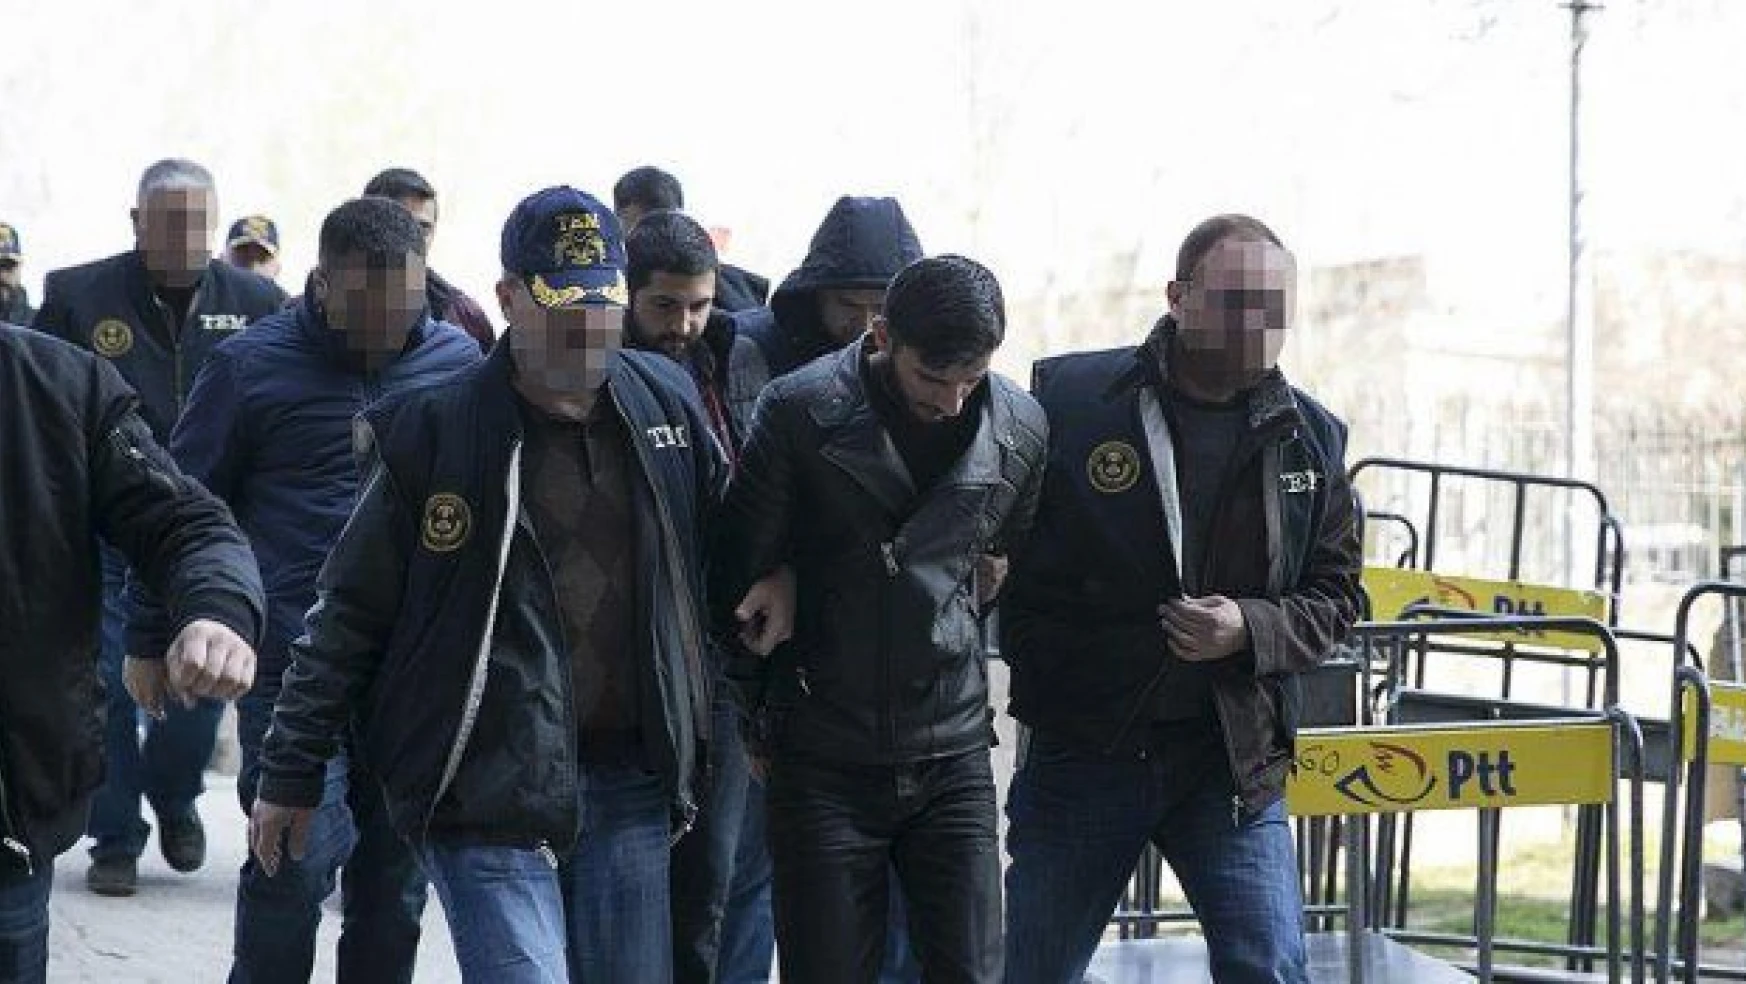 Ankara'daki terör saldırısına ilişkin soruşturmada 5 kişi tutuklandı